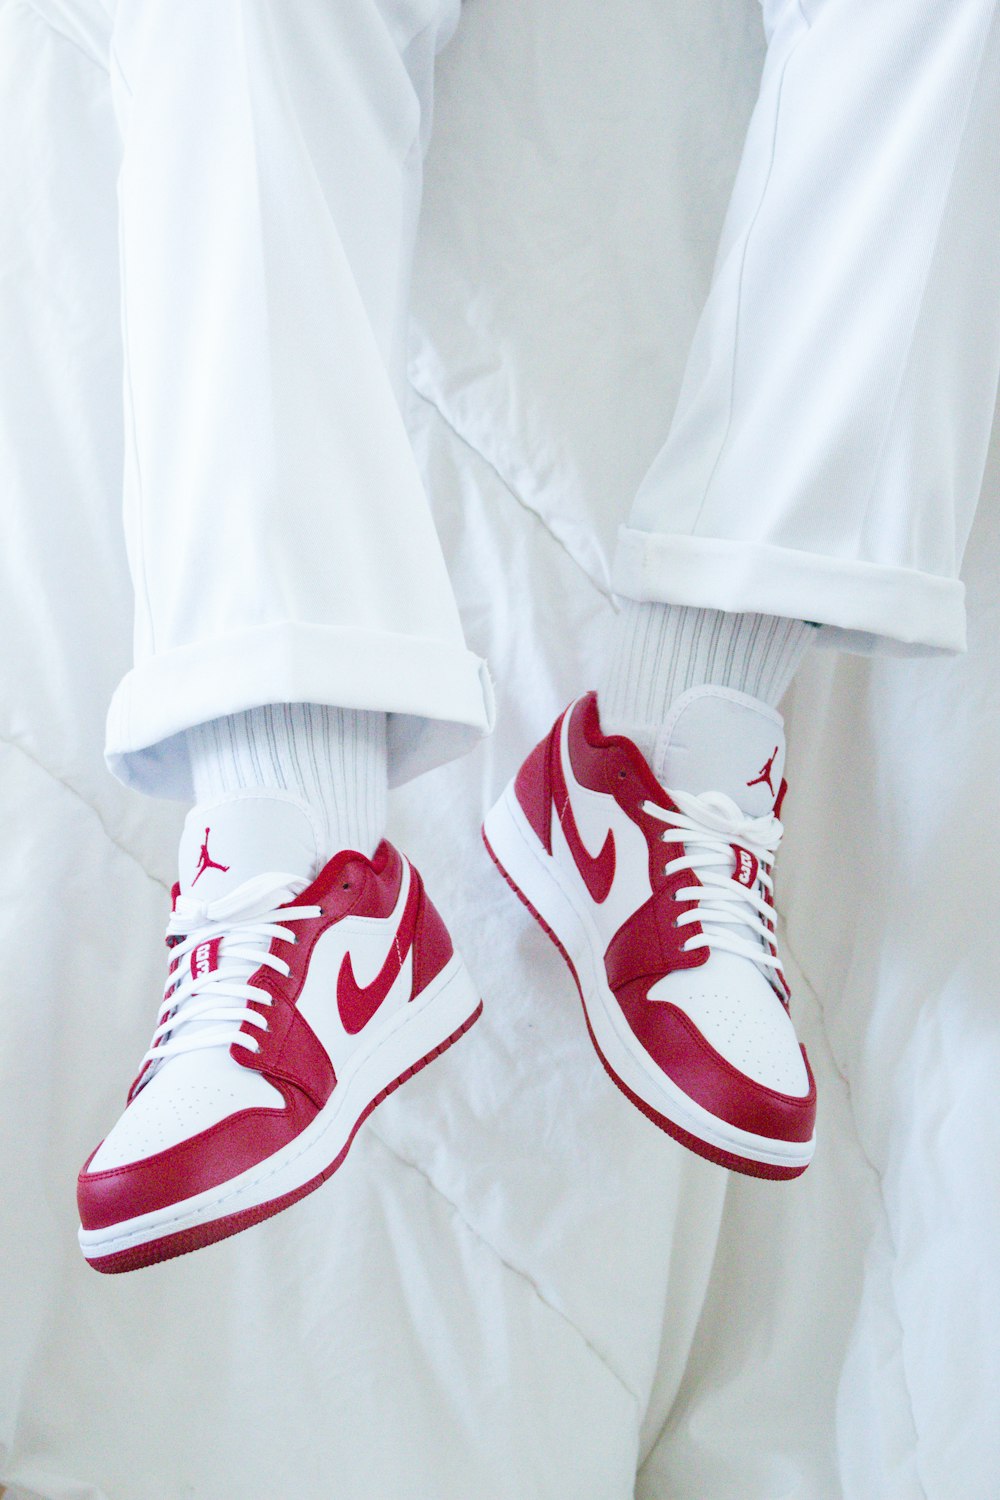 Faial Te mejorarás Incorrecto Foto tenis nike rojos y blancos – Imagen Lyon gratis en Unsplash